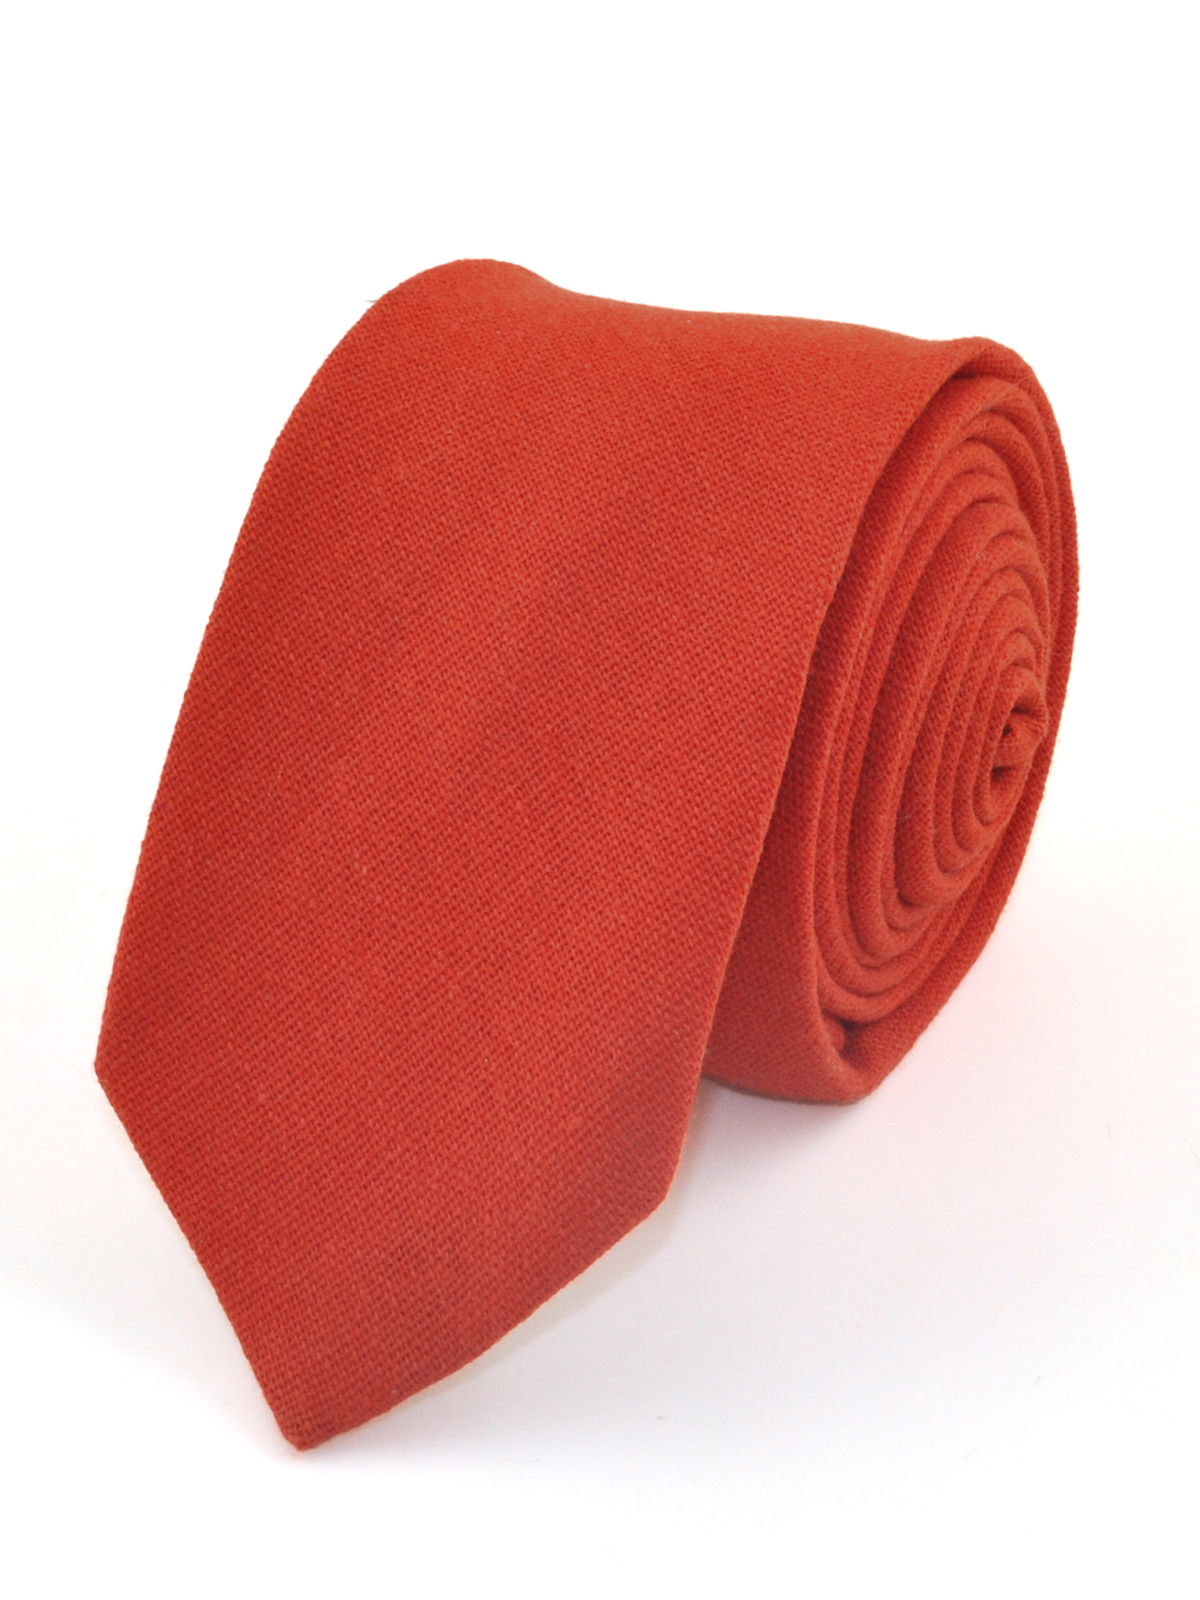 Галстук матовый однотонный красно-оранжевый (кирпичный) описание: Фасон - , Материал - Хлопок, Цвет - Красно-оранжевый (кирпичный), Размер - 5,5 см x 145 см, Страна производства - Турция.